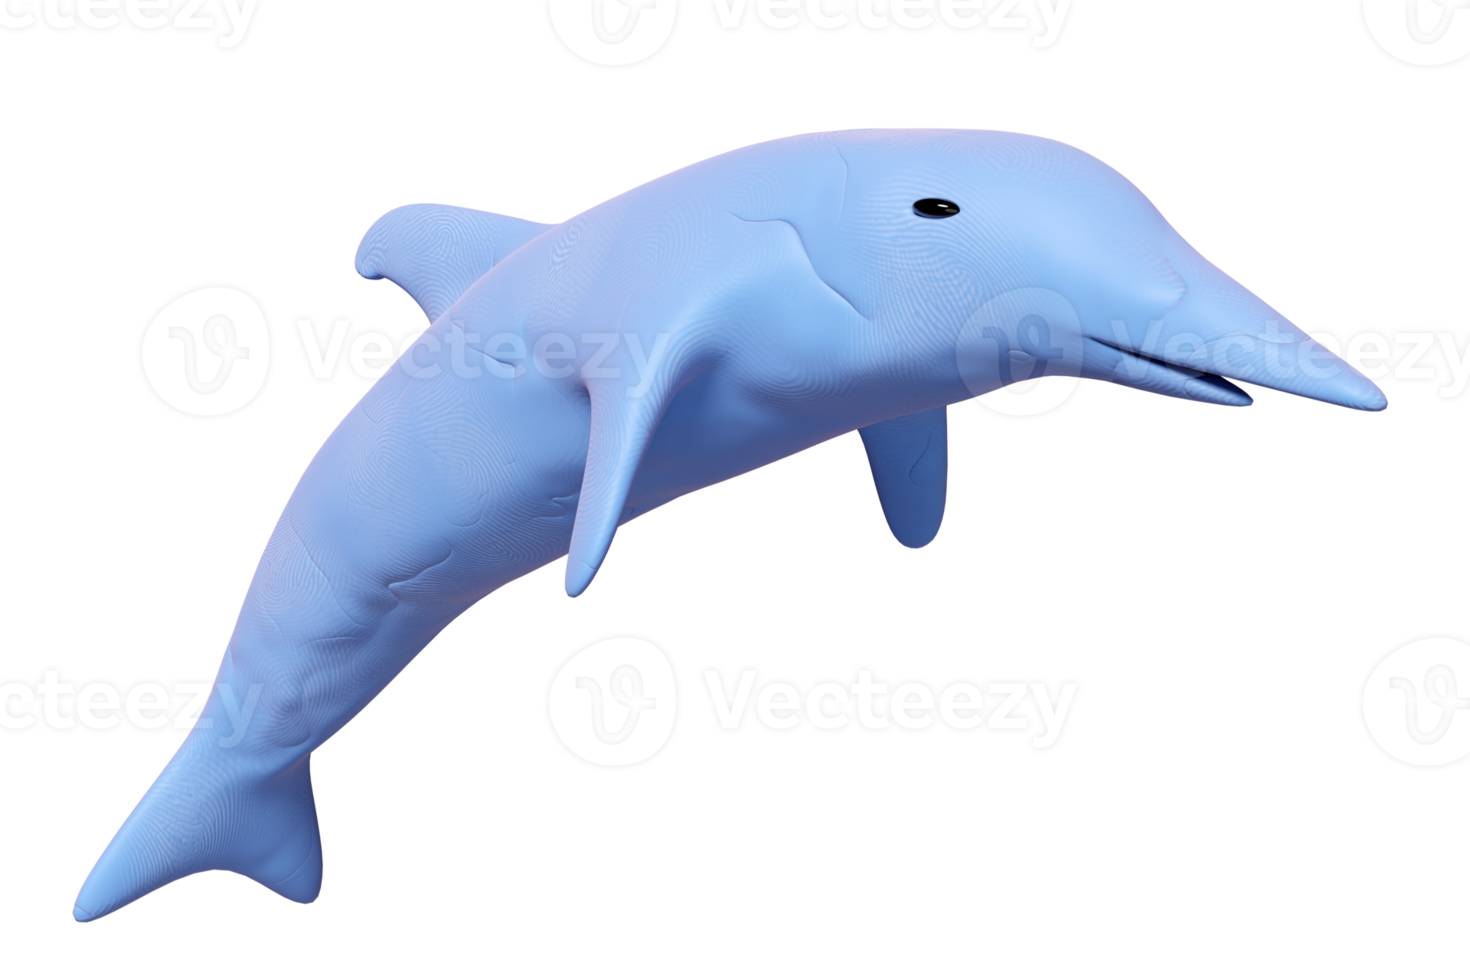 dauphins bleus 3d sautant de la pâte à modeler isolée. Concept d'icône de jouet d'argile de dauphin, illustration 3d render png